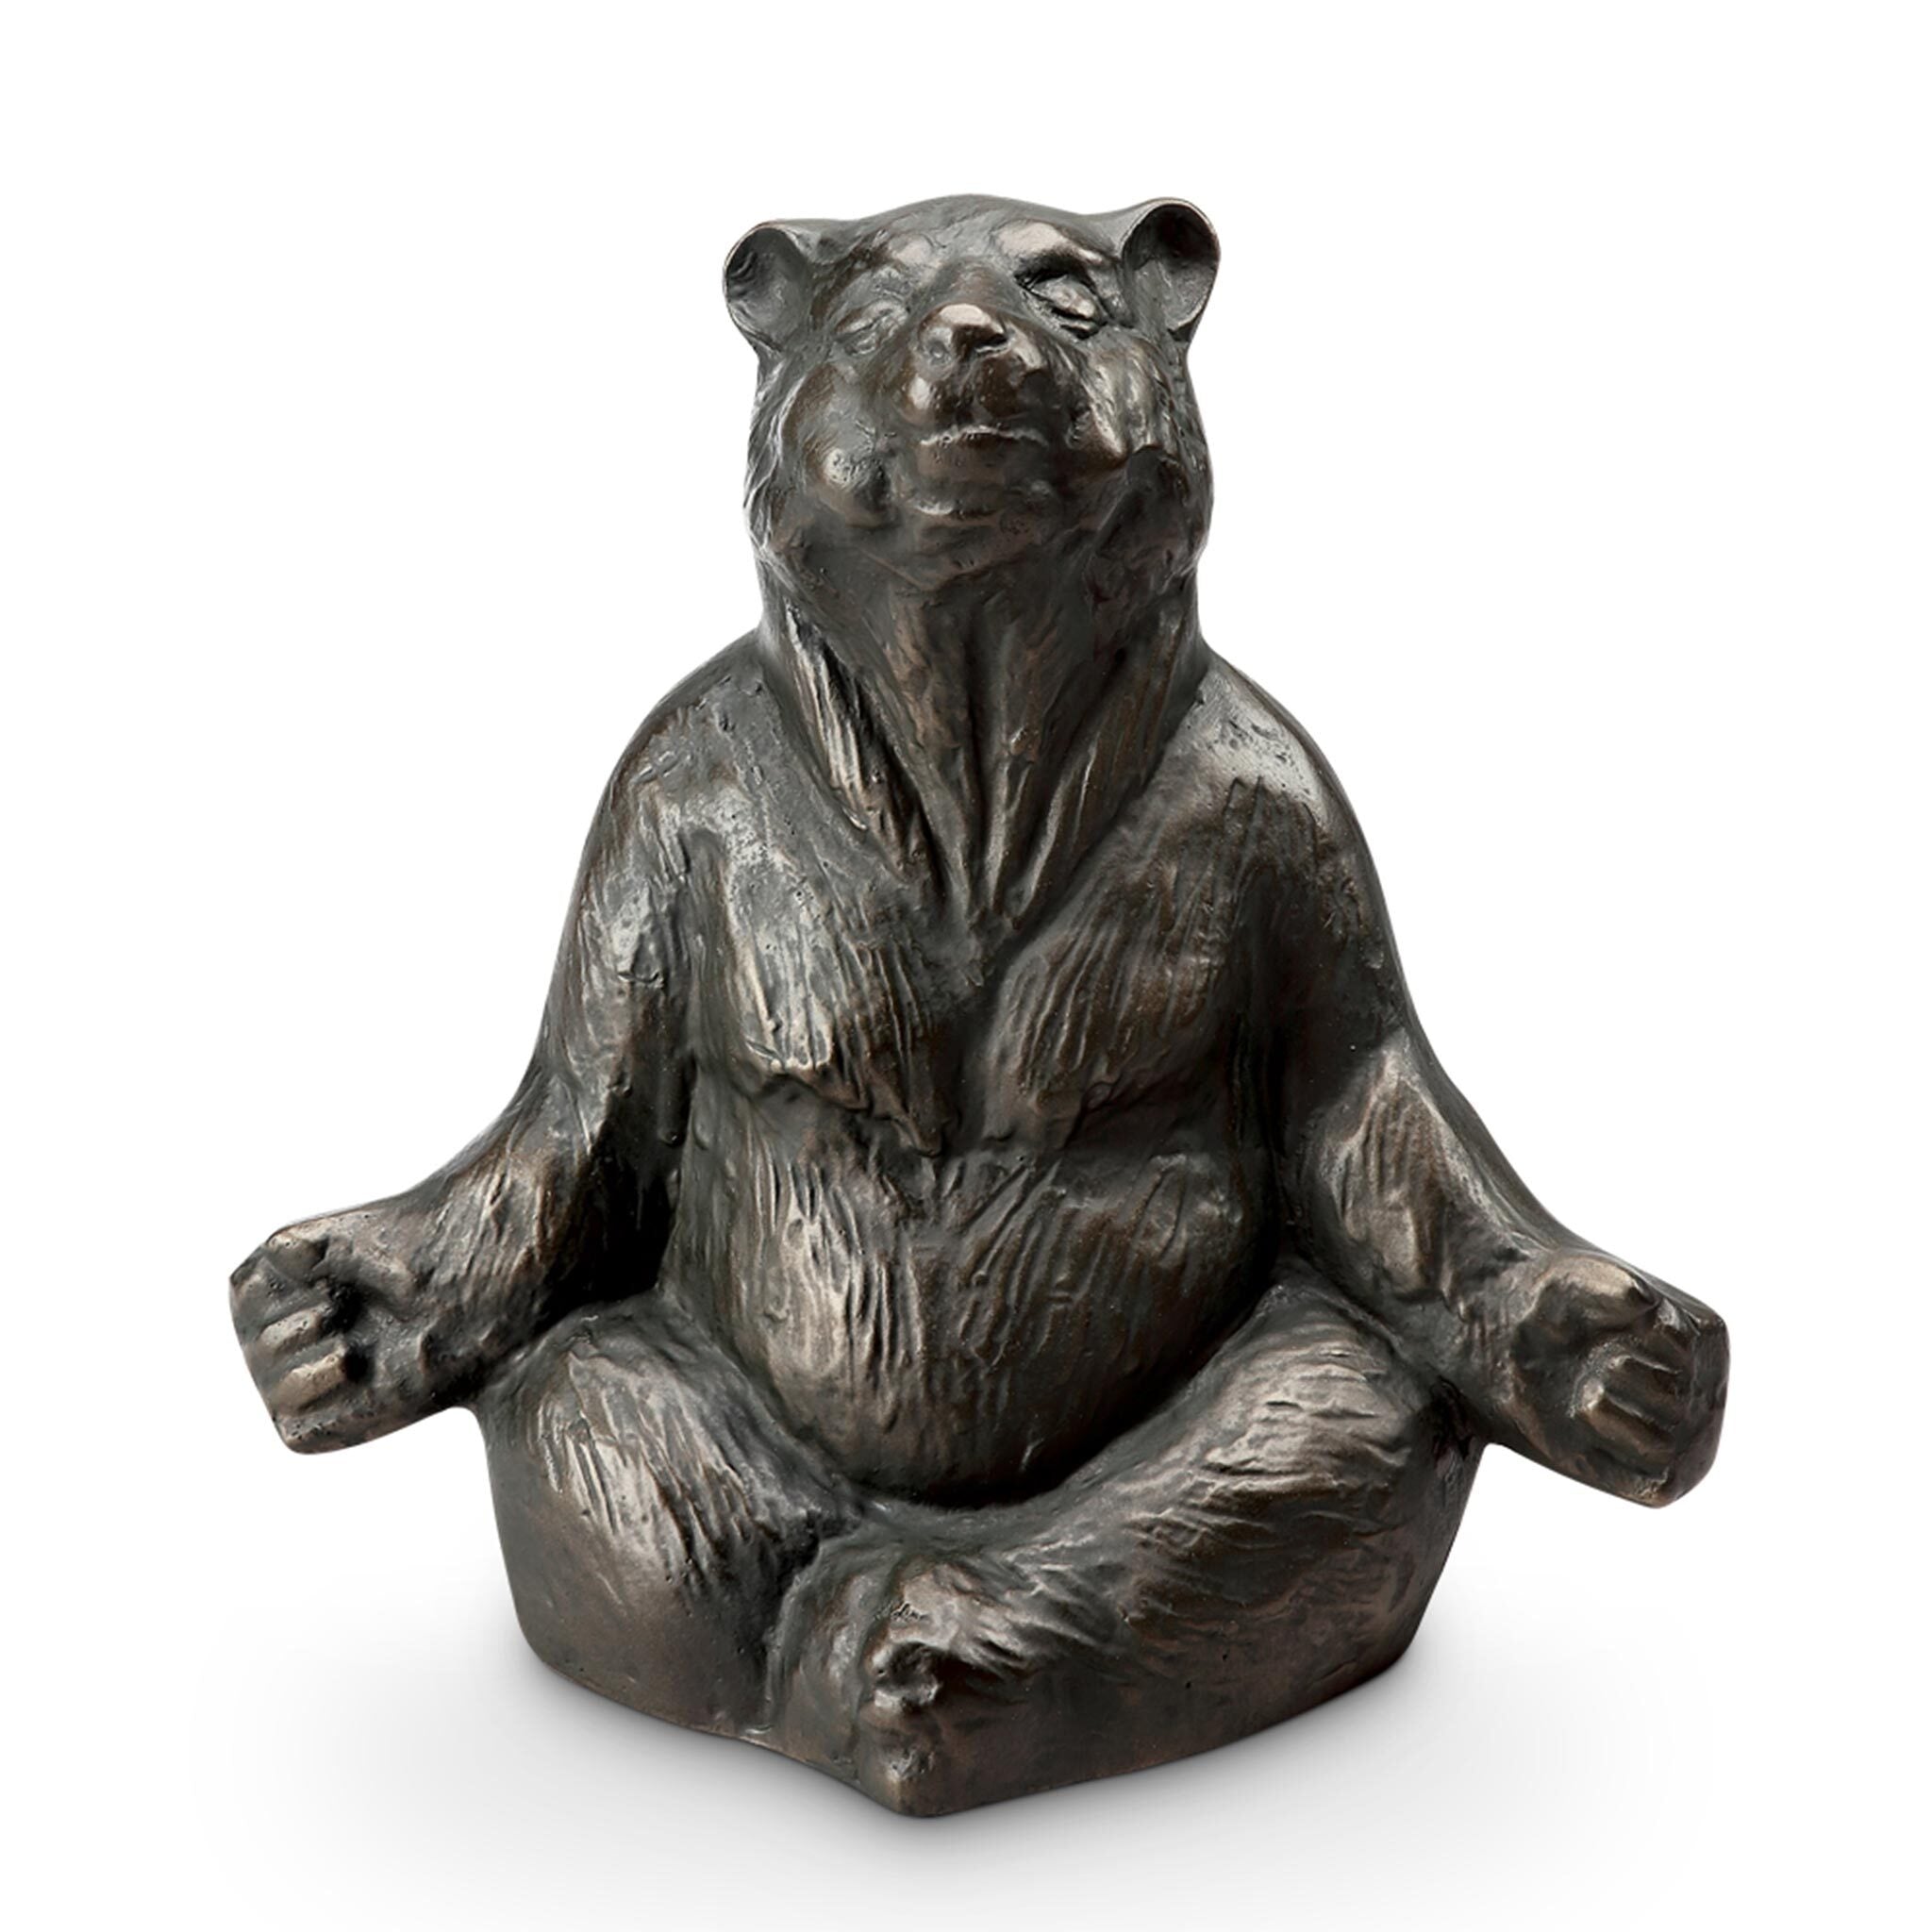 Contented Yoga Bear Garden Sculpture #3